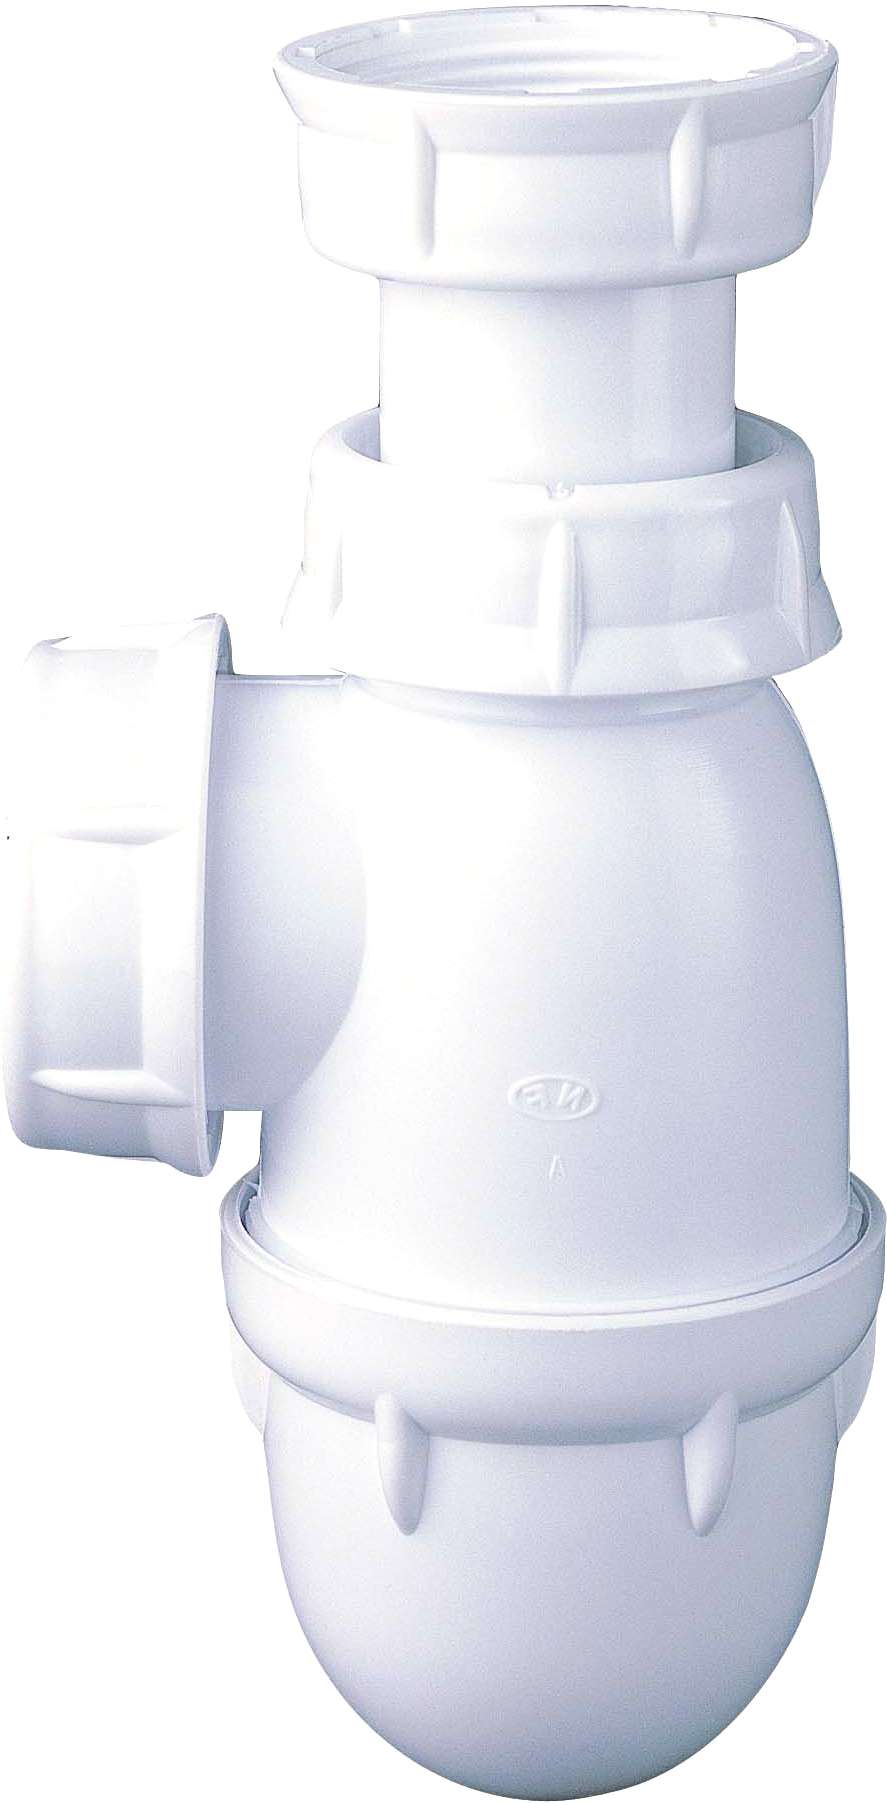 Sifone regolabile per lavabo con tappo rimovibile - 0201001